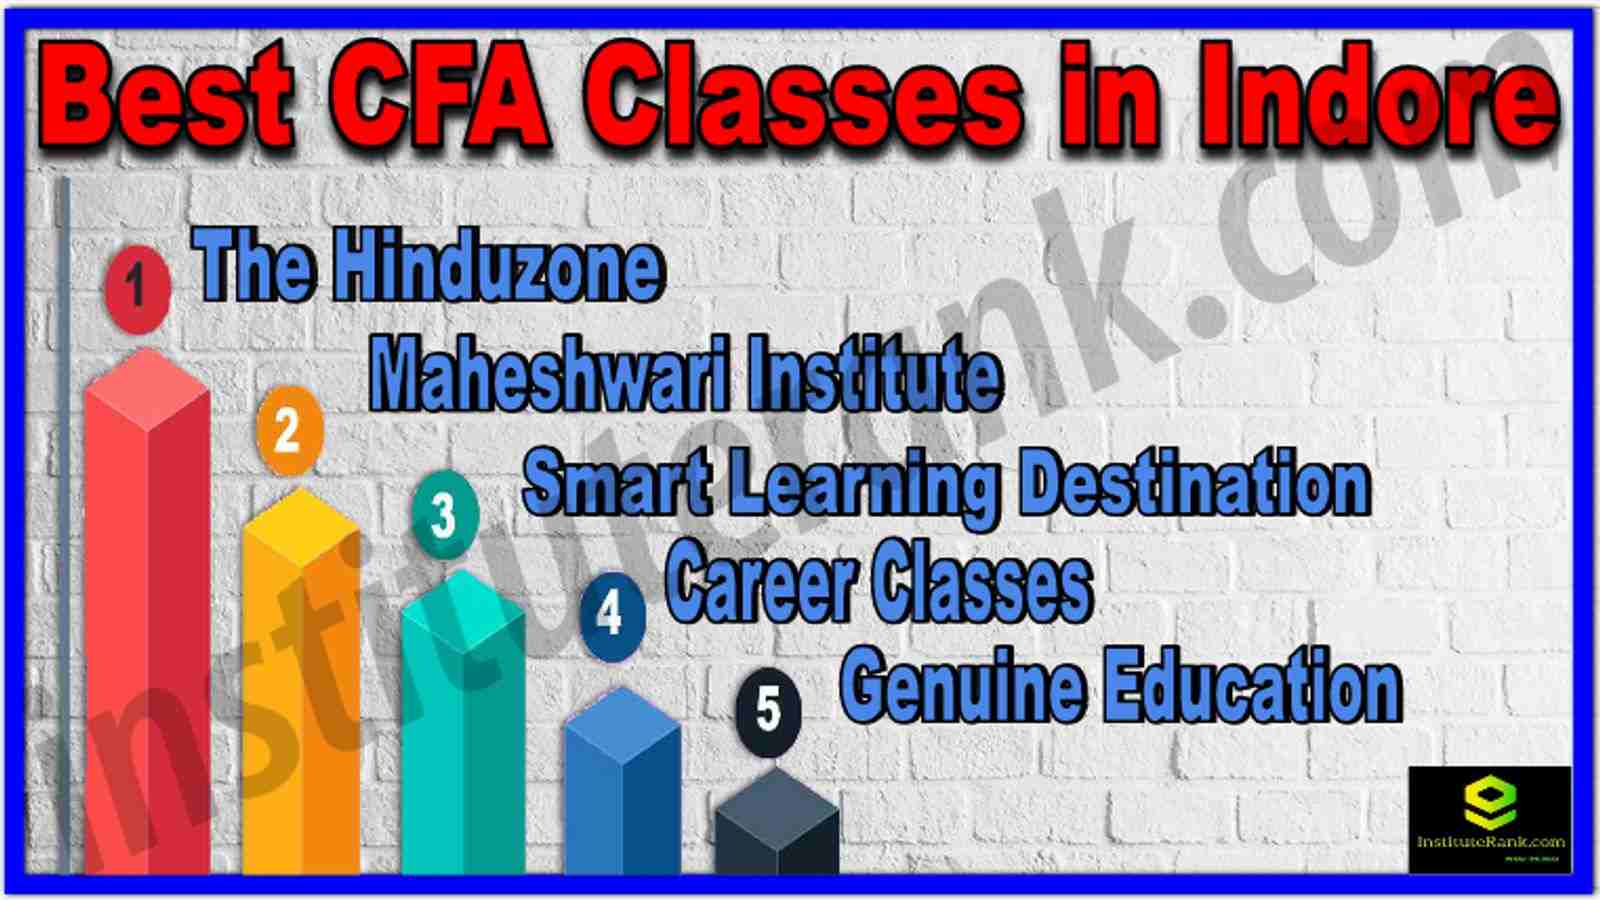 Best CFA Classes in Indore